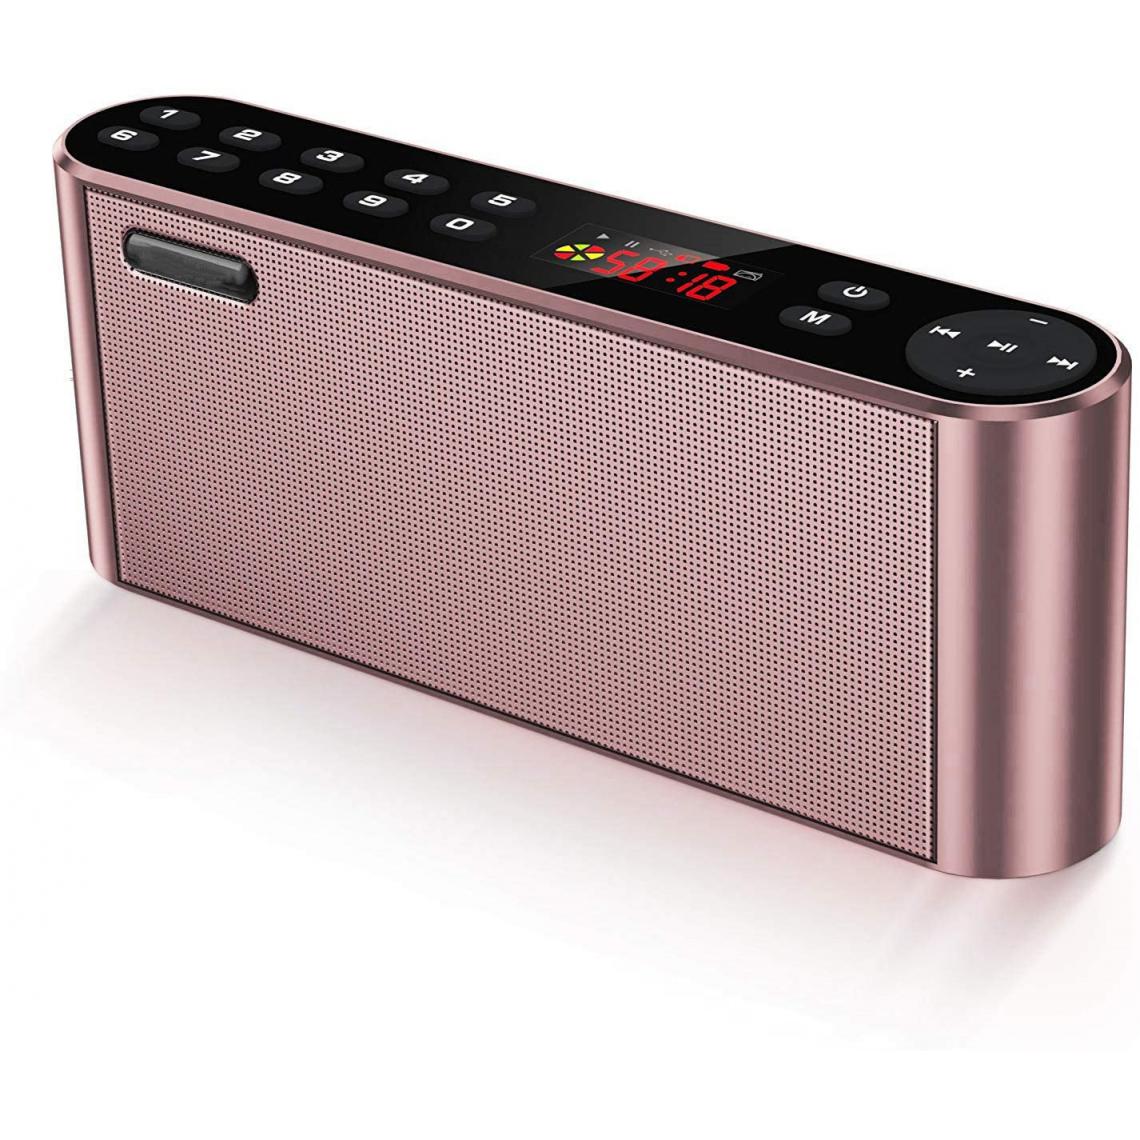 Chrono - Haut-parleur Bluetooth sans fil, portable, avec radio FM numérique, lecteur MP7 et puissant microphone intégré et deux haut-parleurs,Or rose - Enceintes Hifi